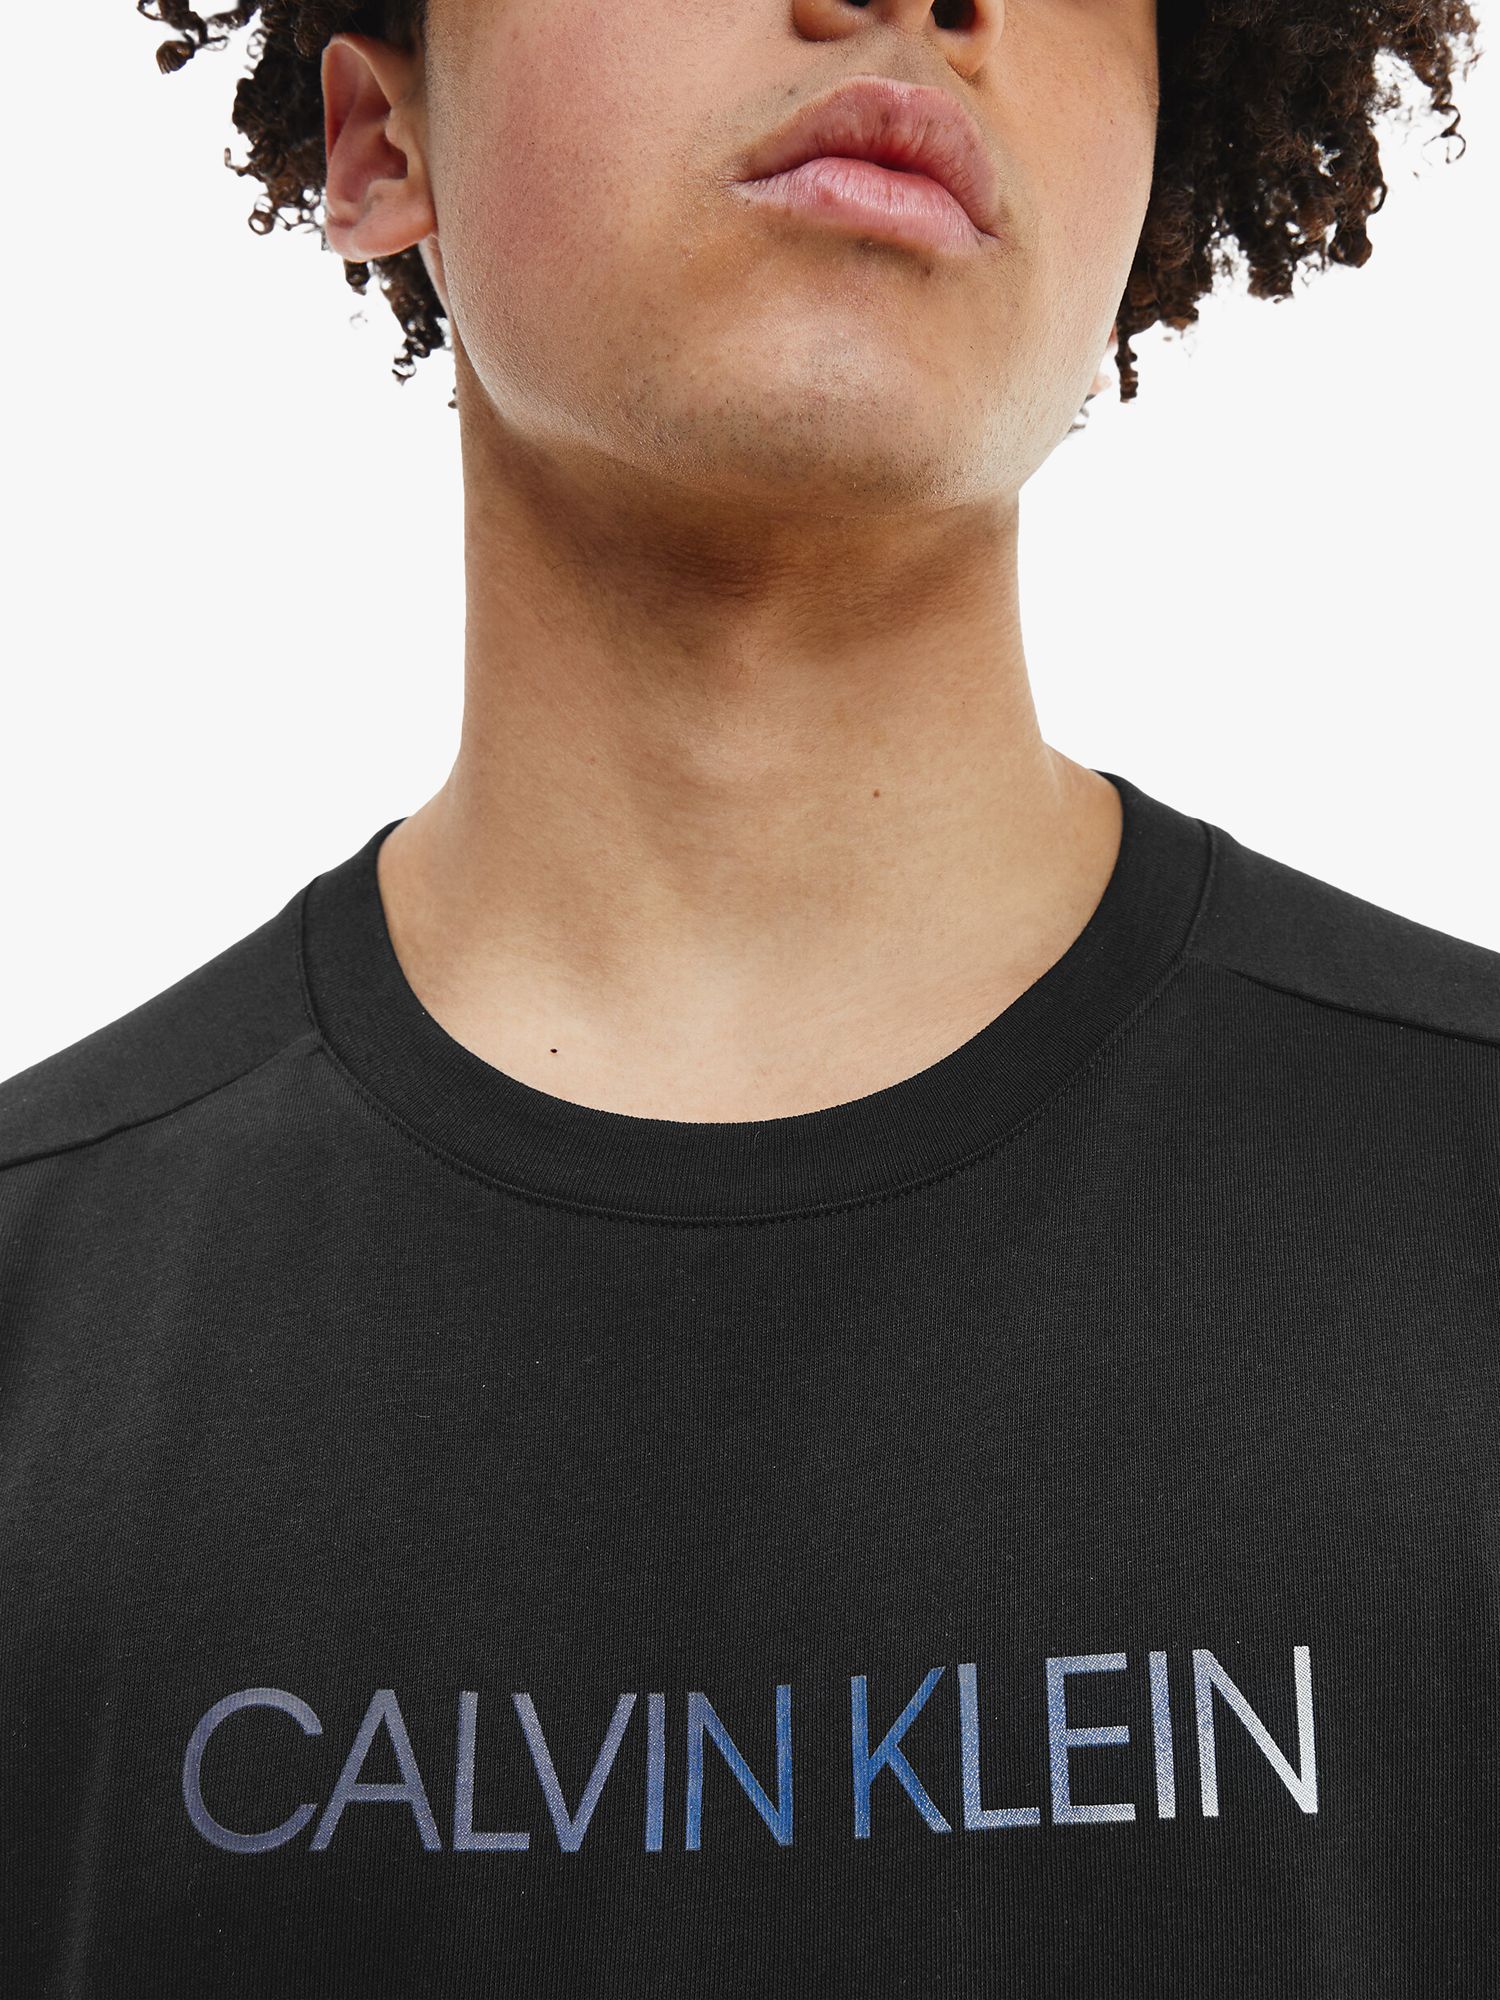 Calvin Klein Performance Logo T-Shirt, CK Black at John Lewis & Partners